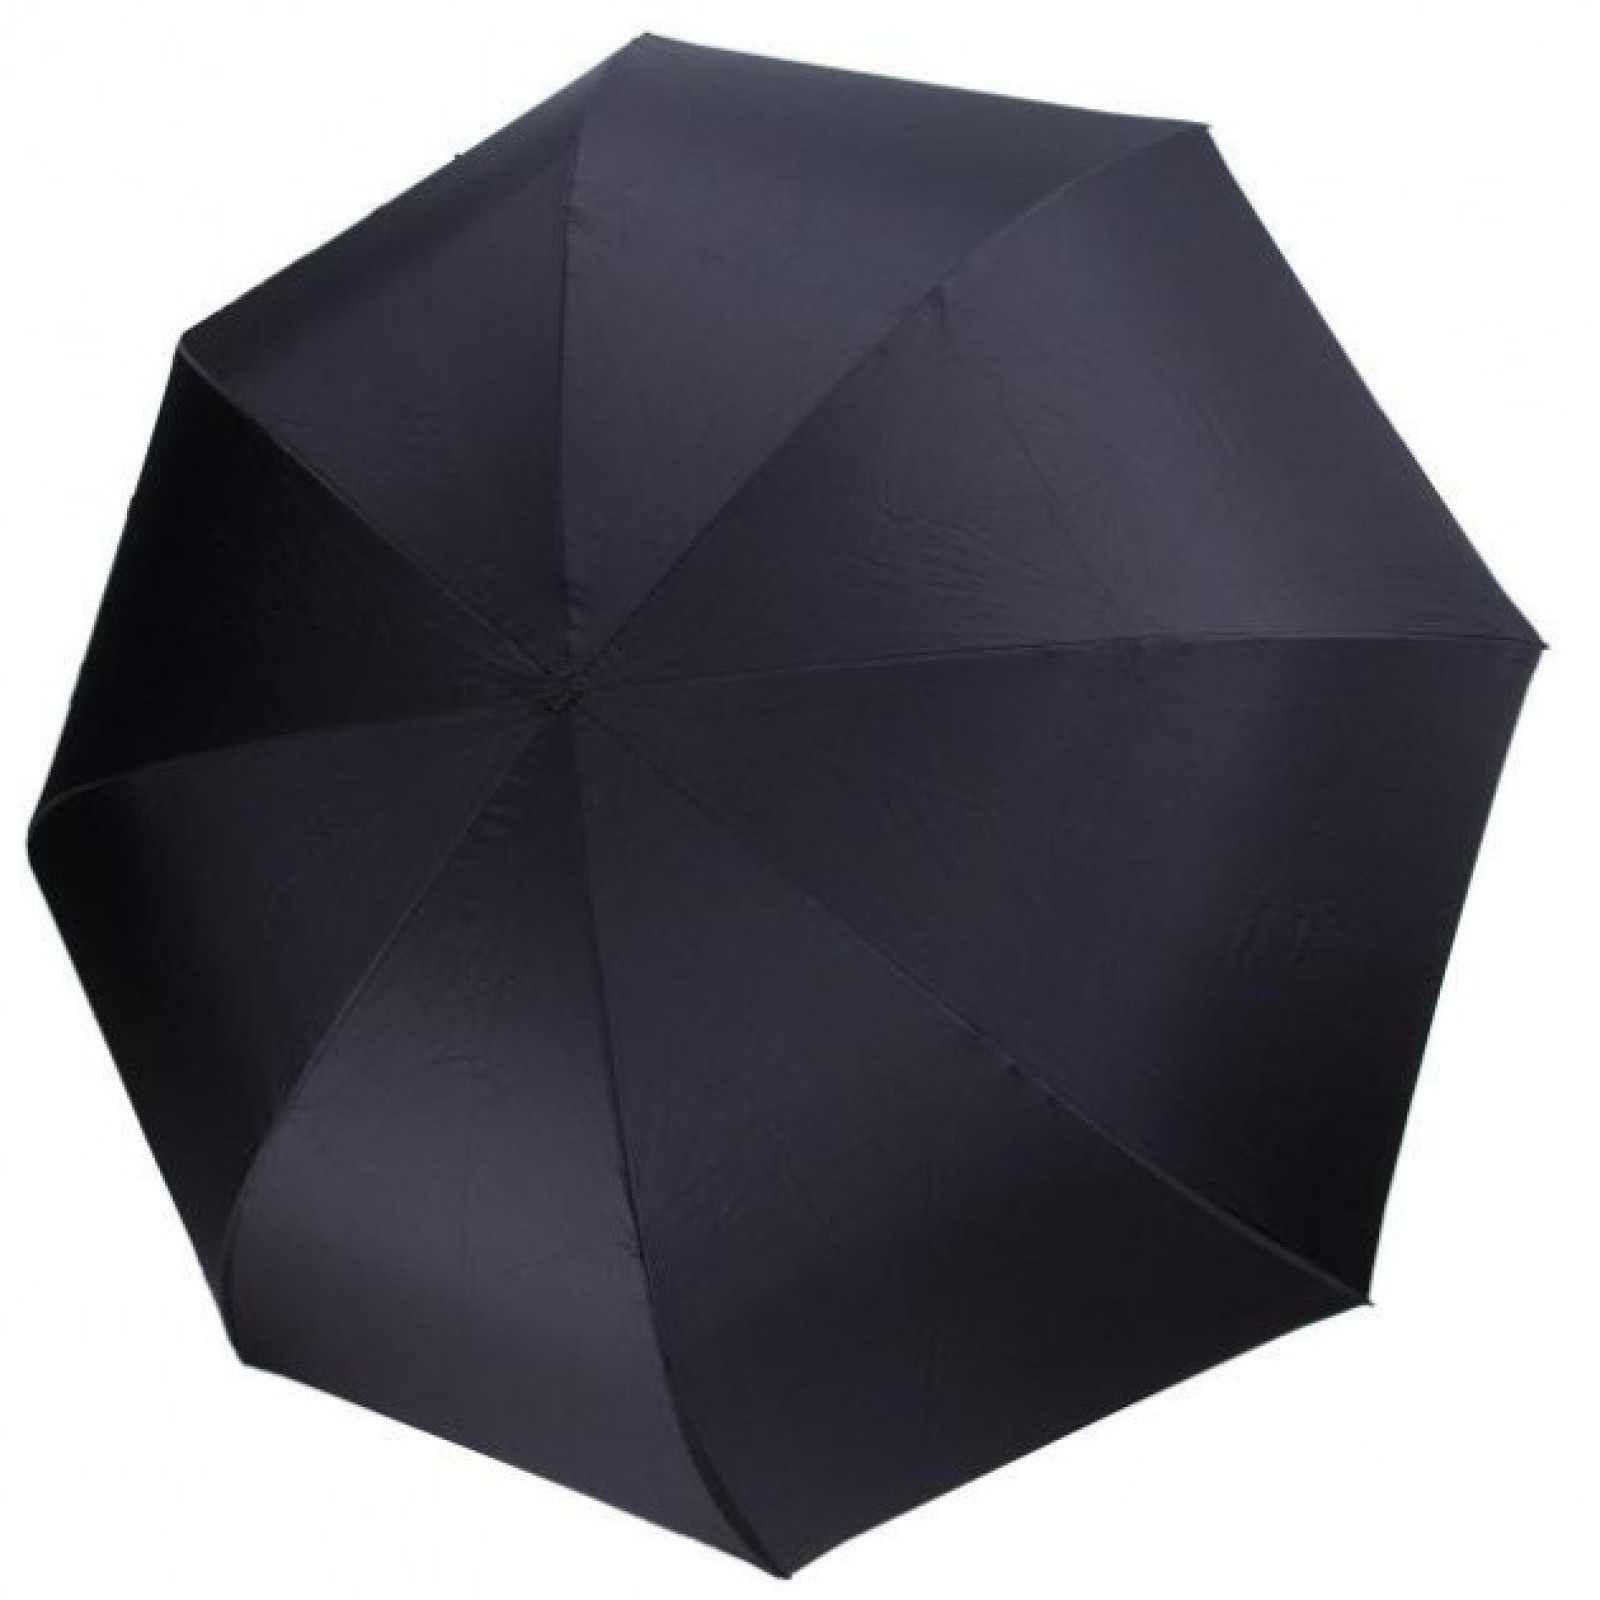 Зонт обратного сложения, антизонт, умный зонт, зонт наоборот Up Brella Зелёный 151033